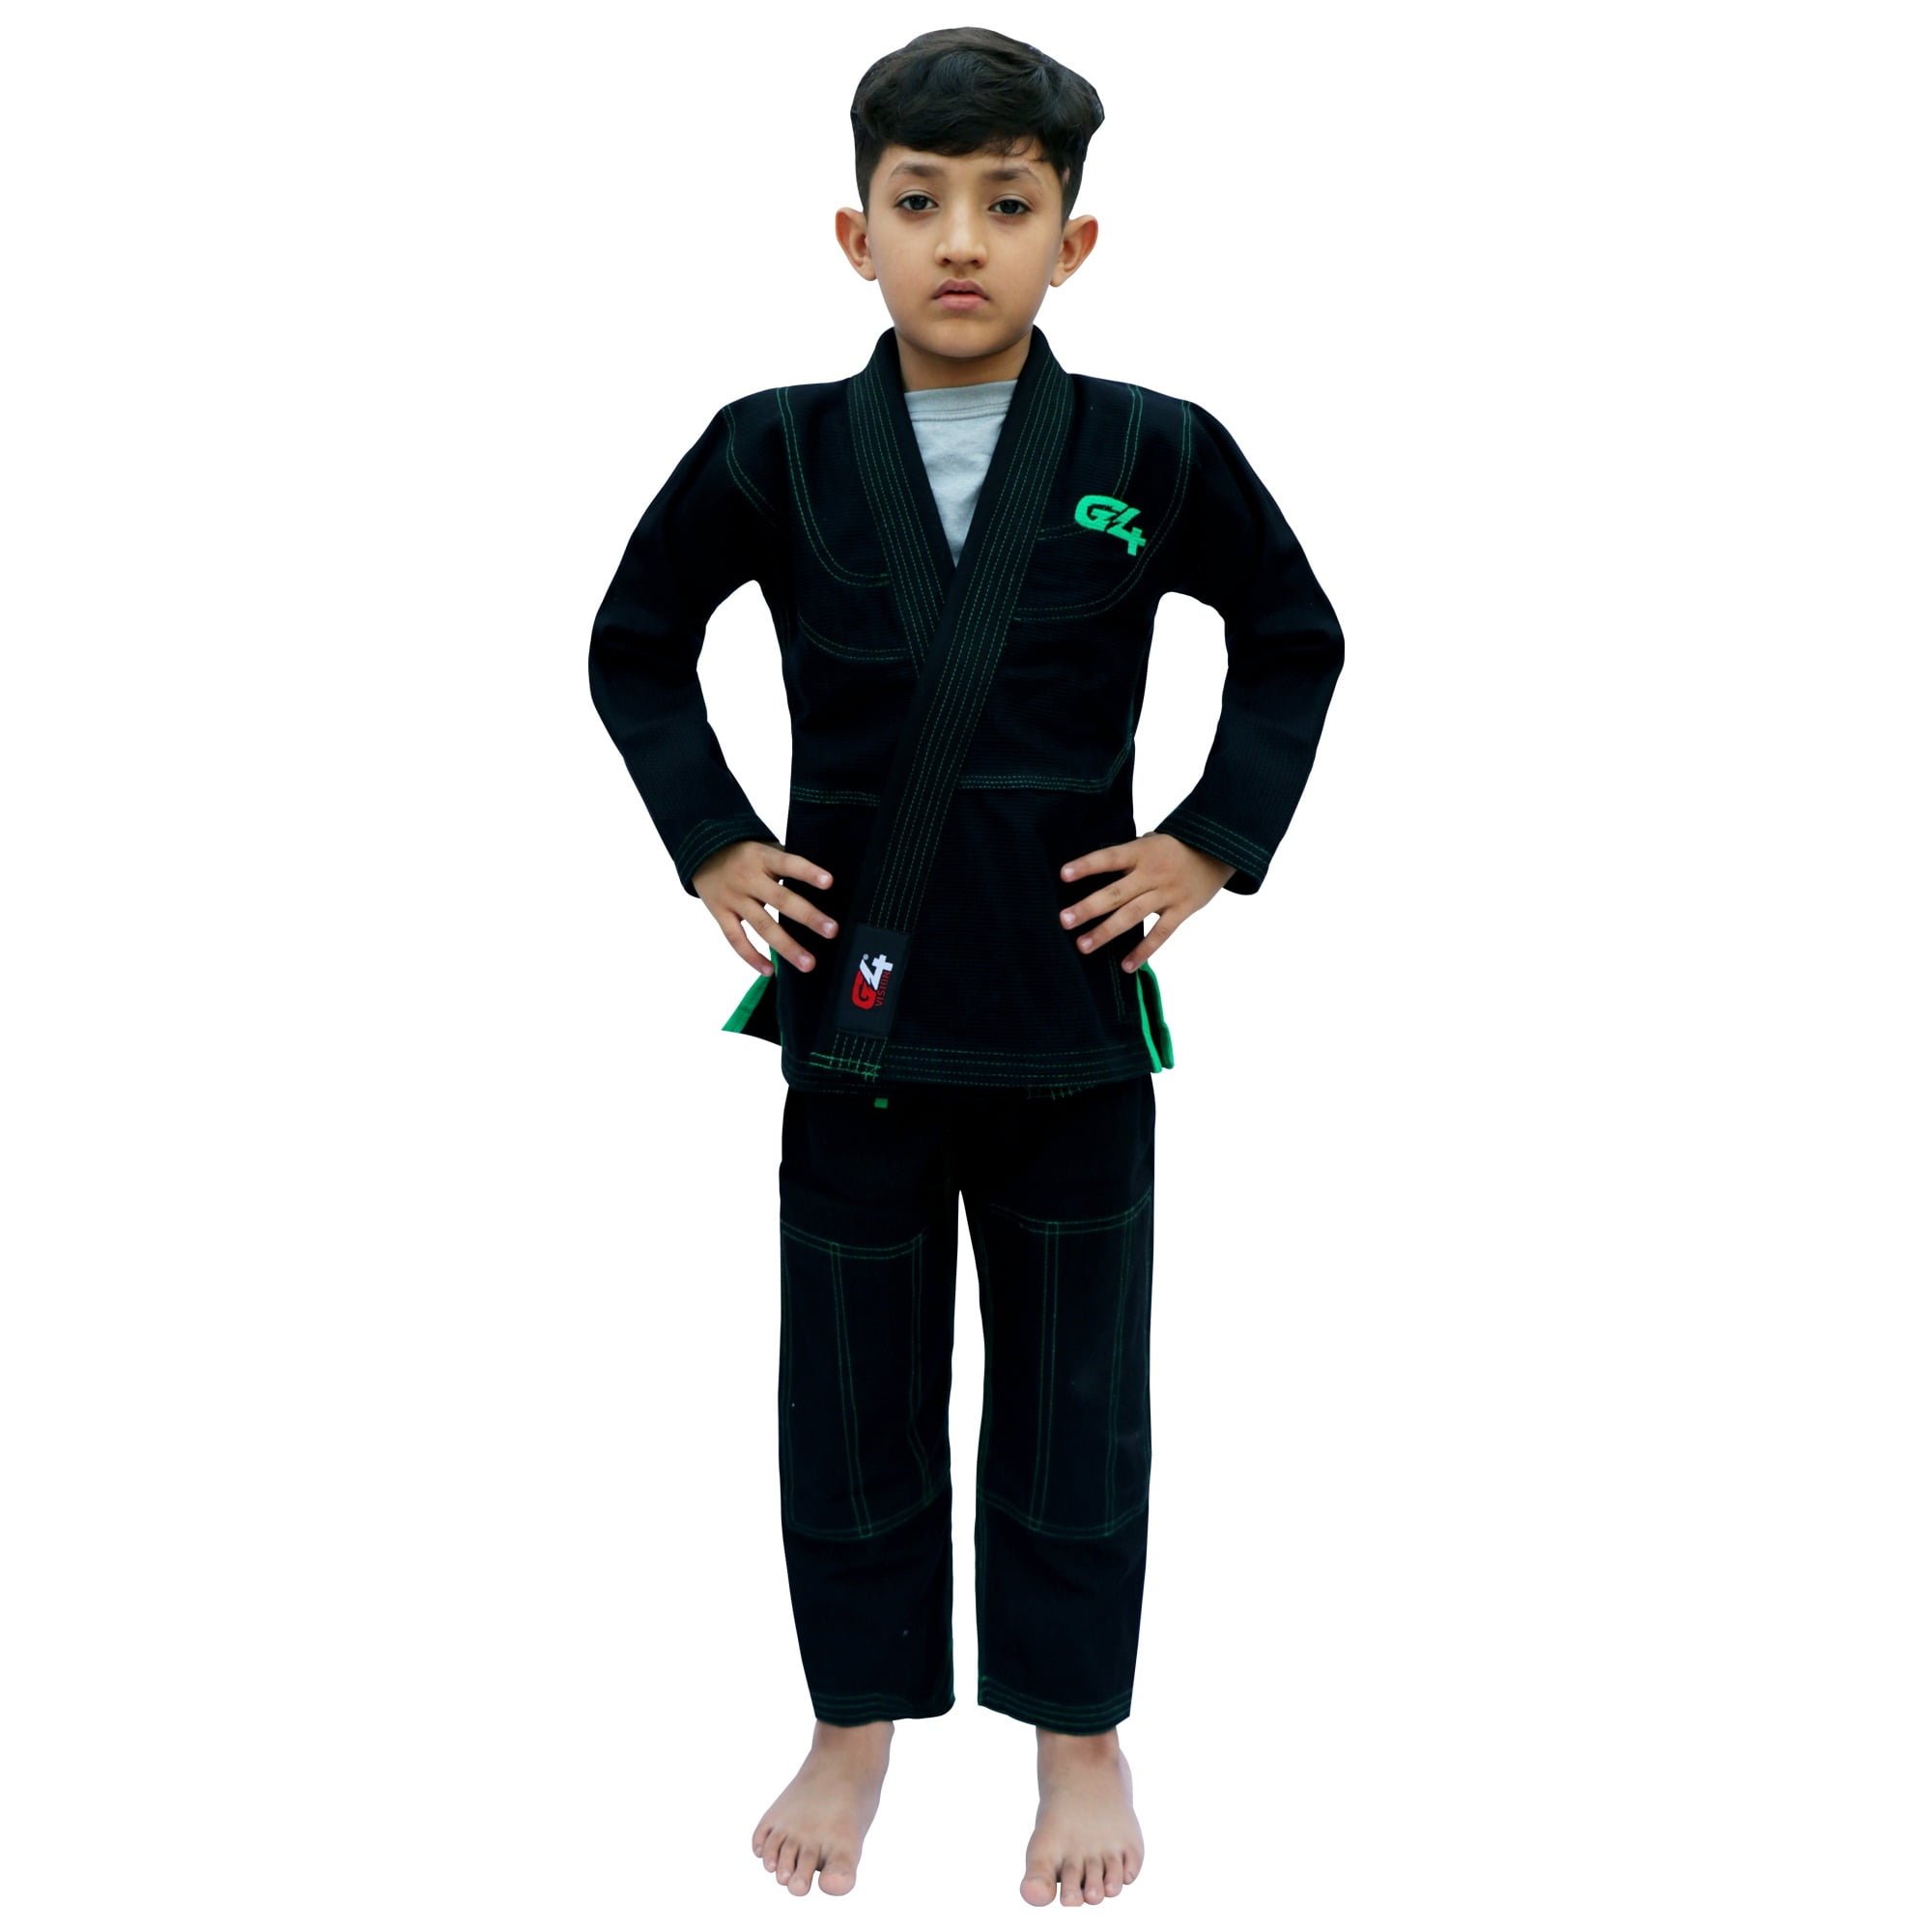 G4-bjj-kids-suit-black-01